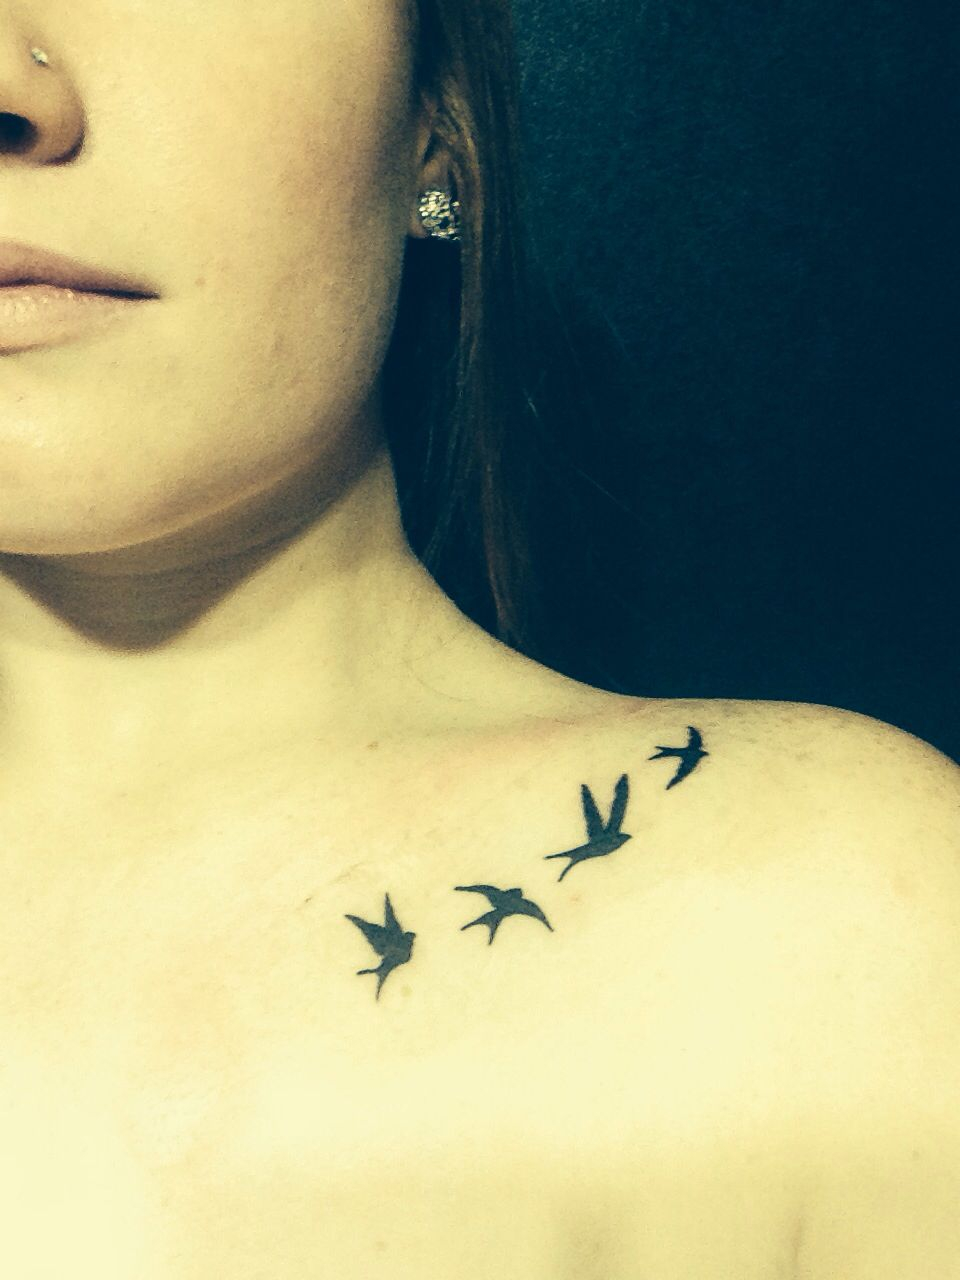 Flight Is Freedom Bird Tattoo Tattoos Freedom Bird Tattoos in sizing 960 X 1280